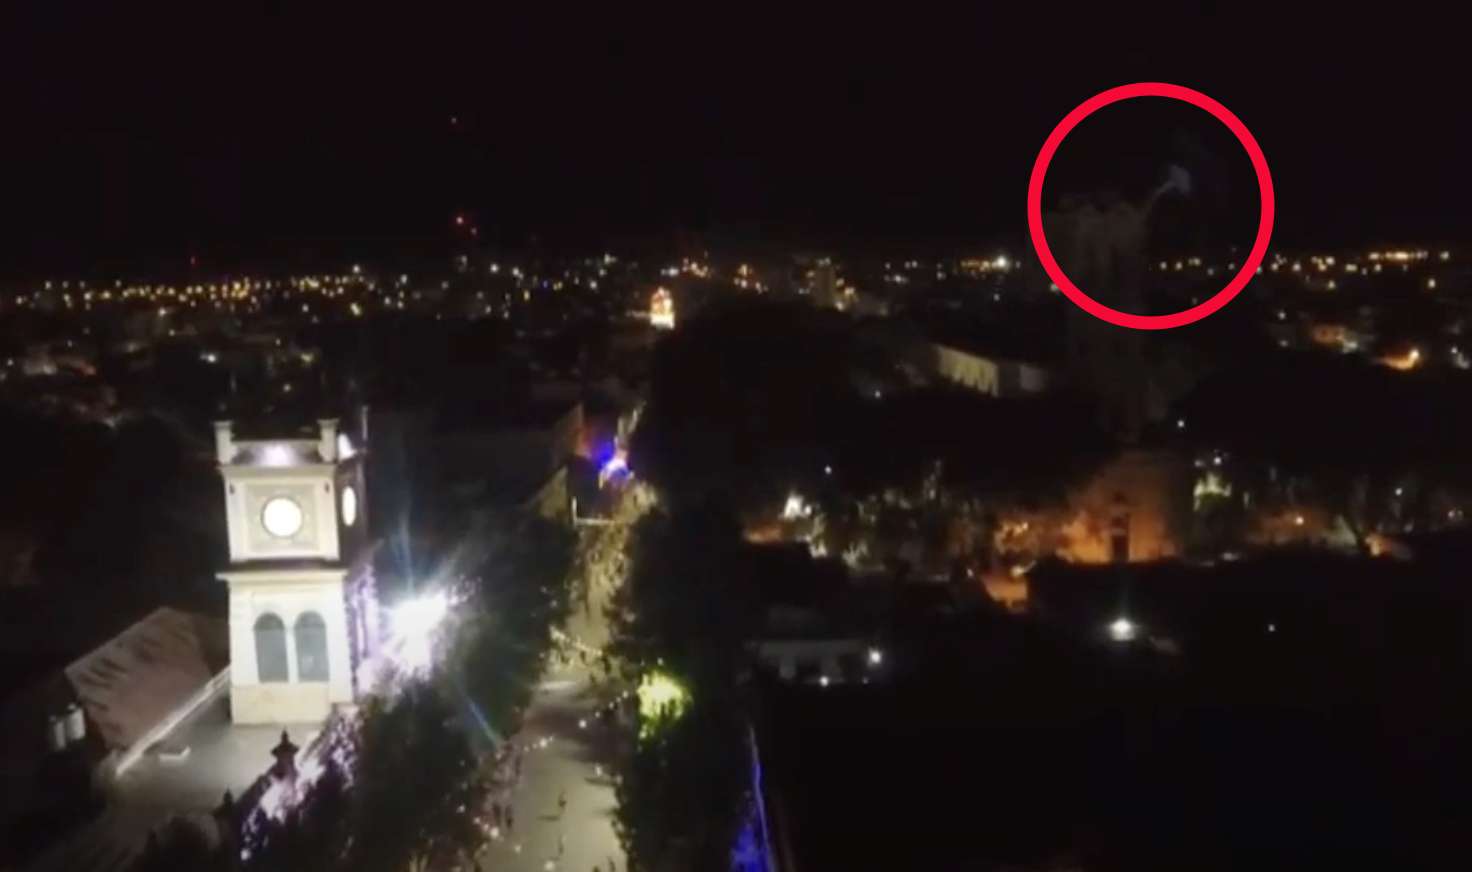 ¿Es un fantasma? La rara figura captada por un drone durante el Carnaval, sobre la torre de la iglesia